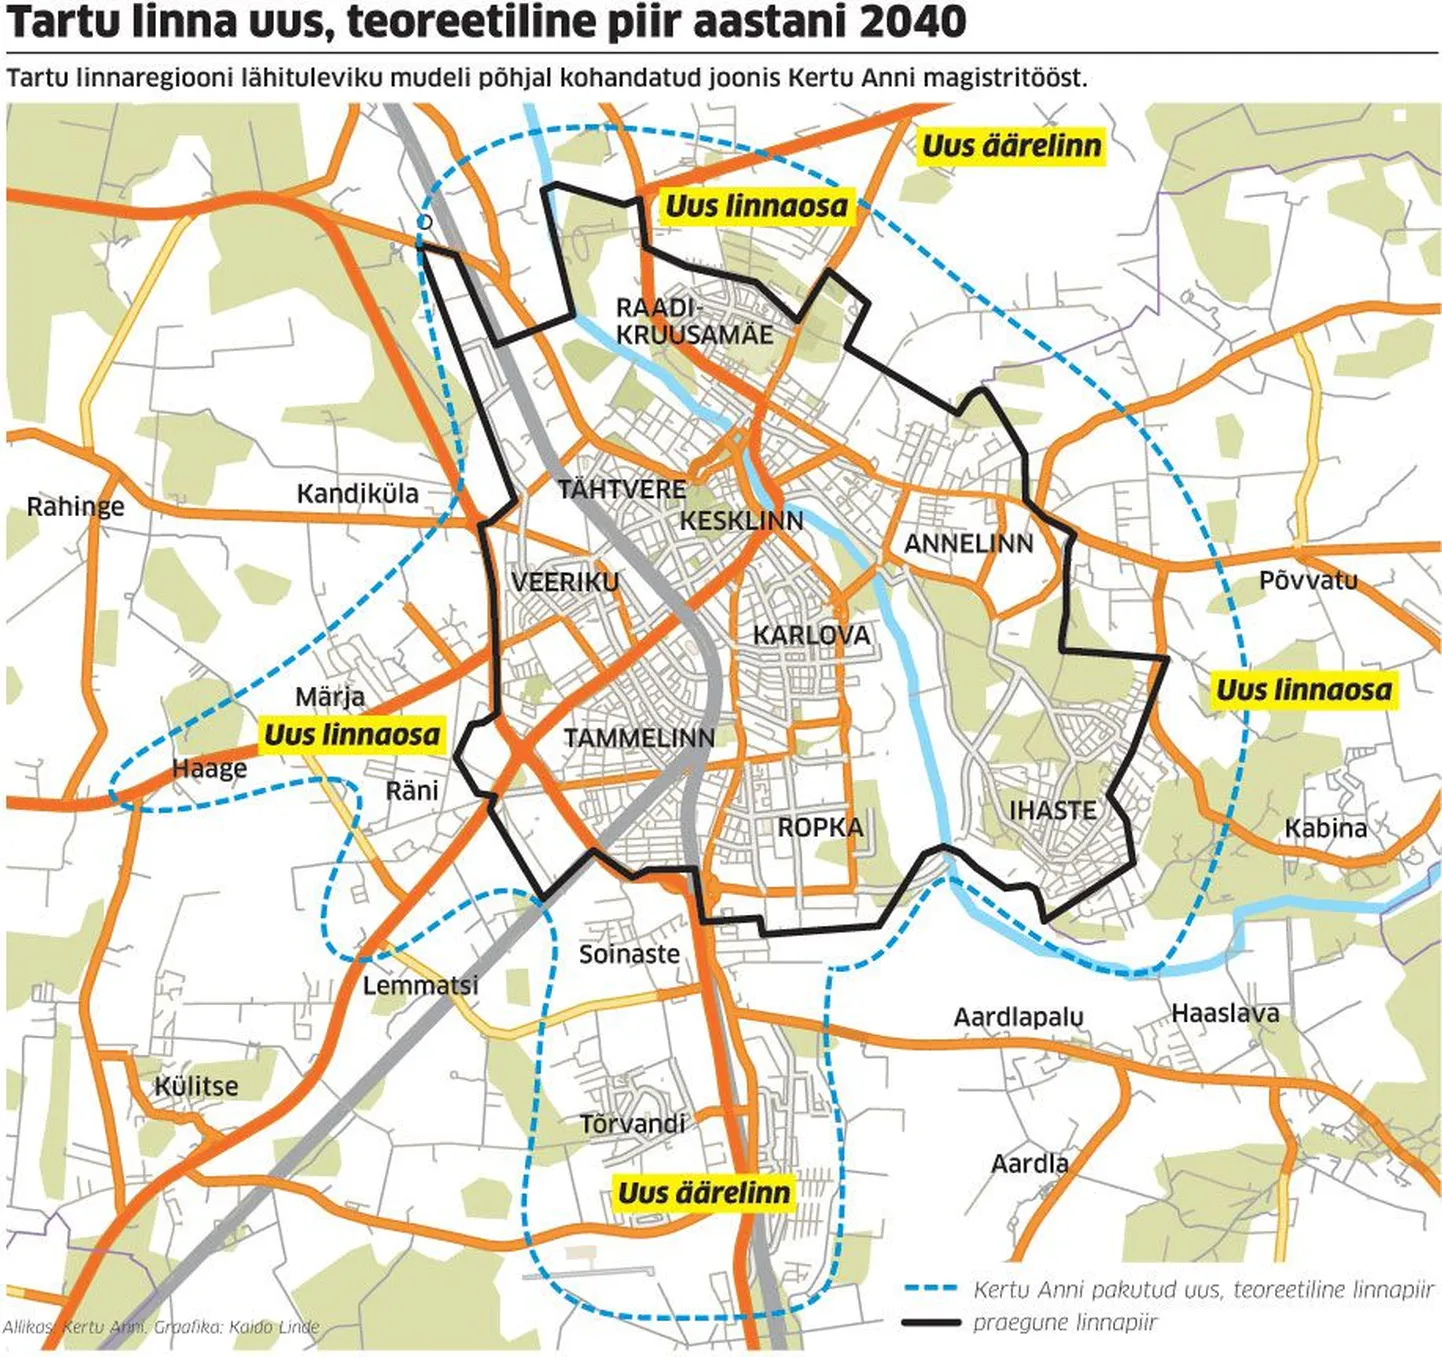 Tartu linna uus, teoreetiline piir aastani 2040.